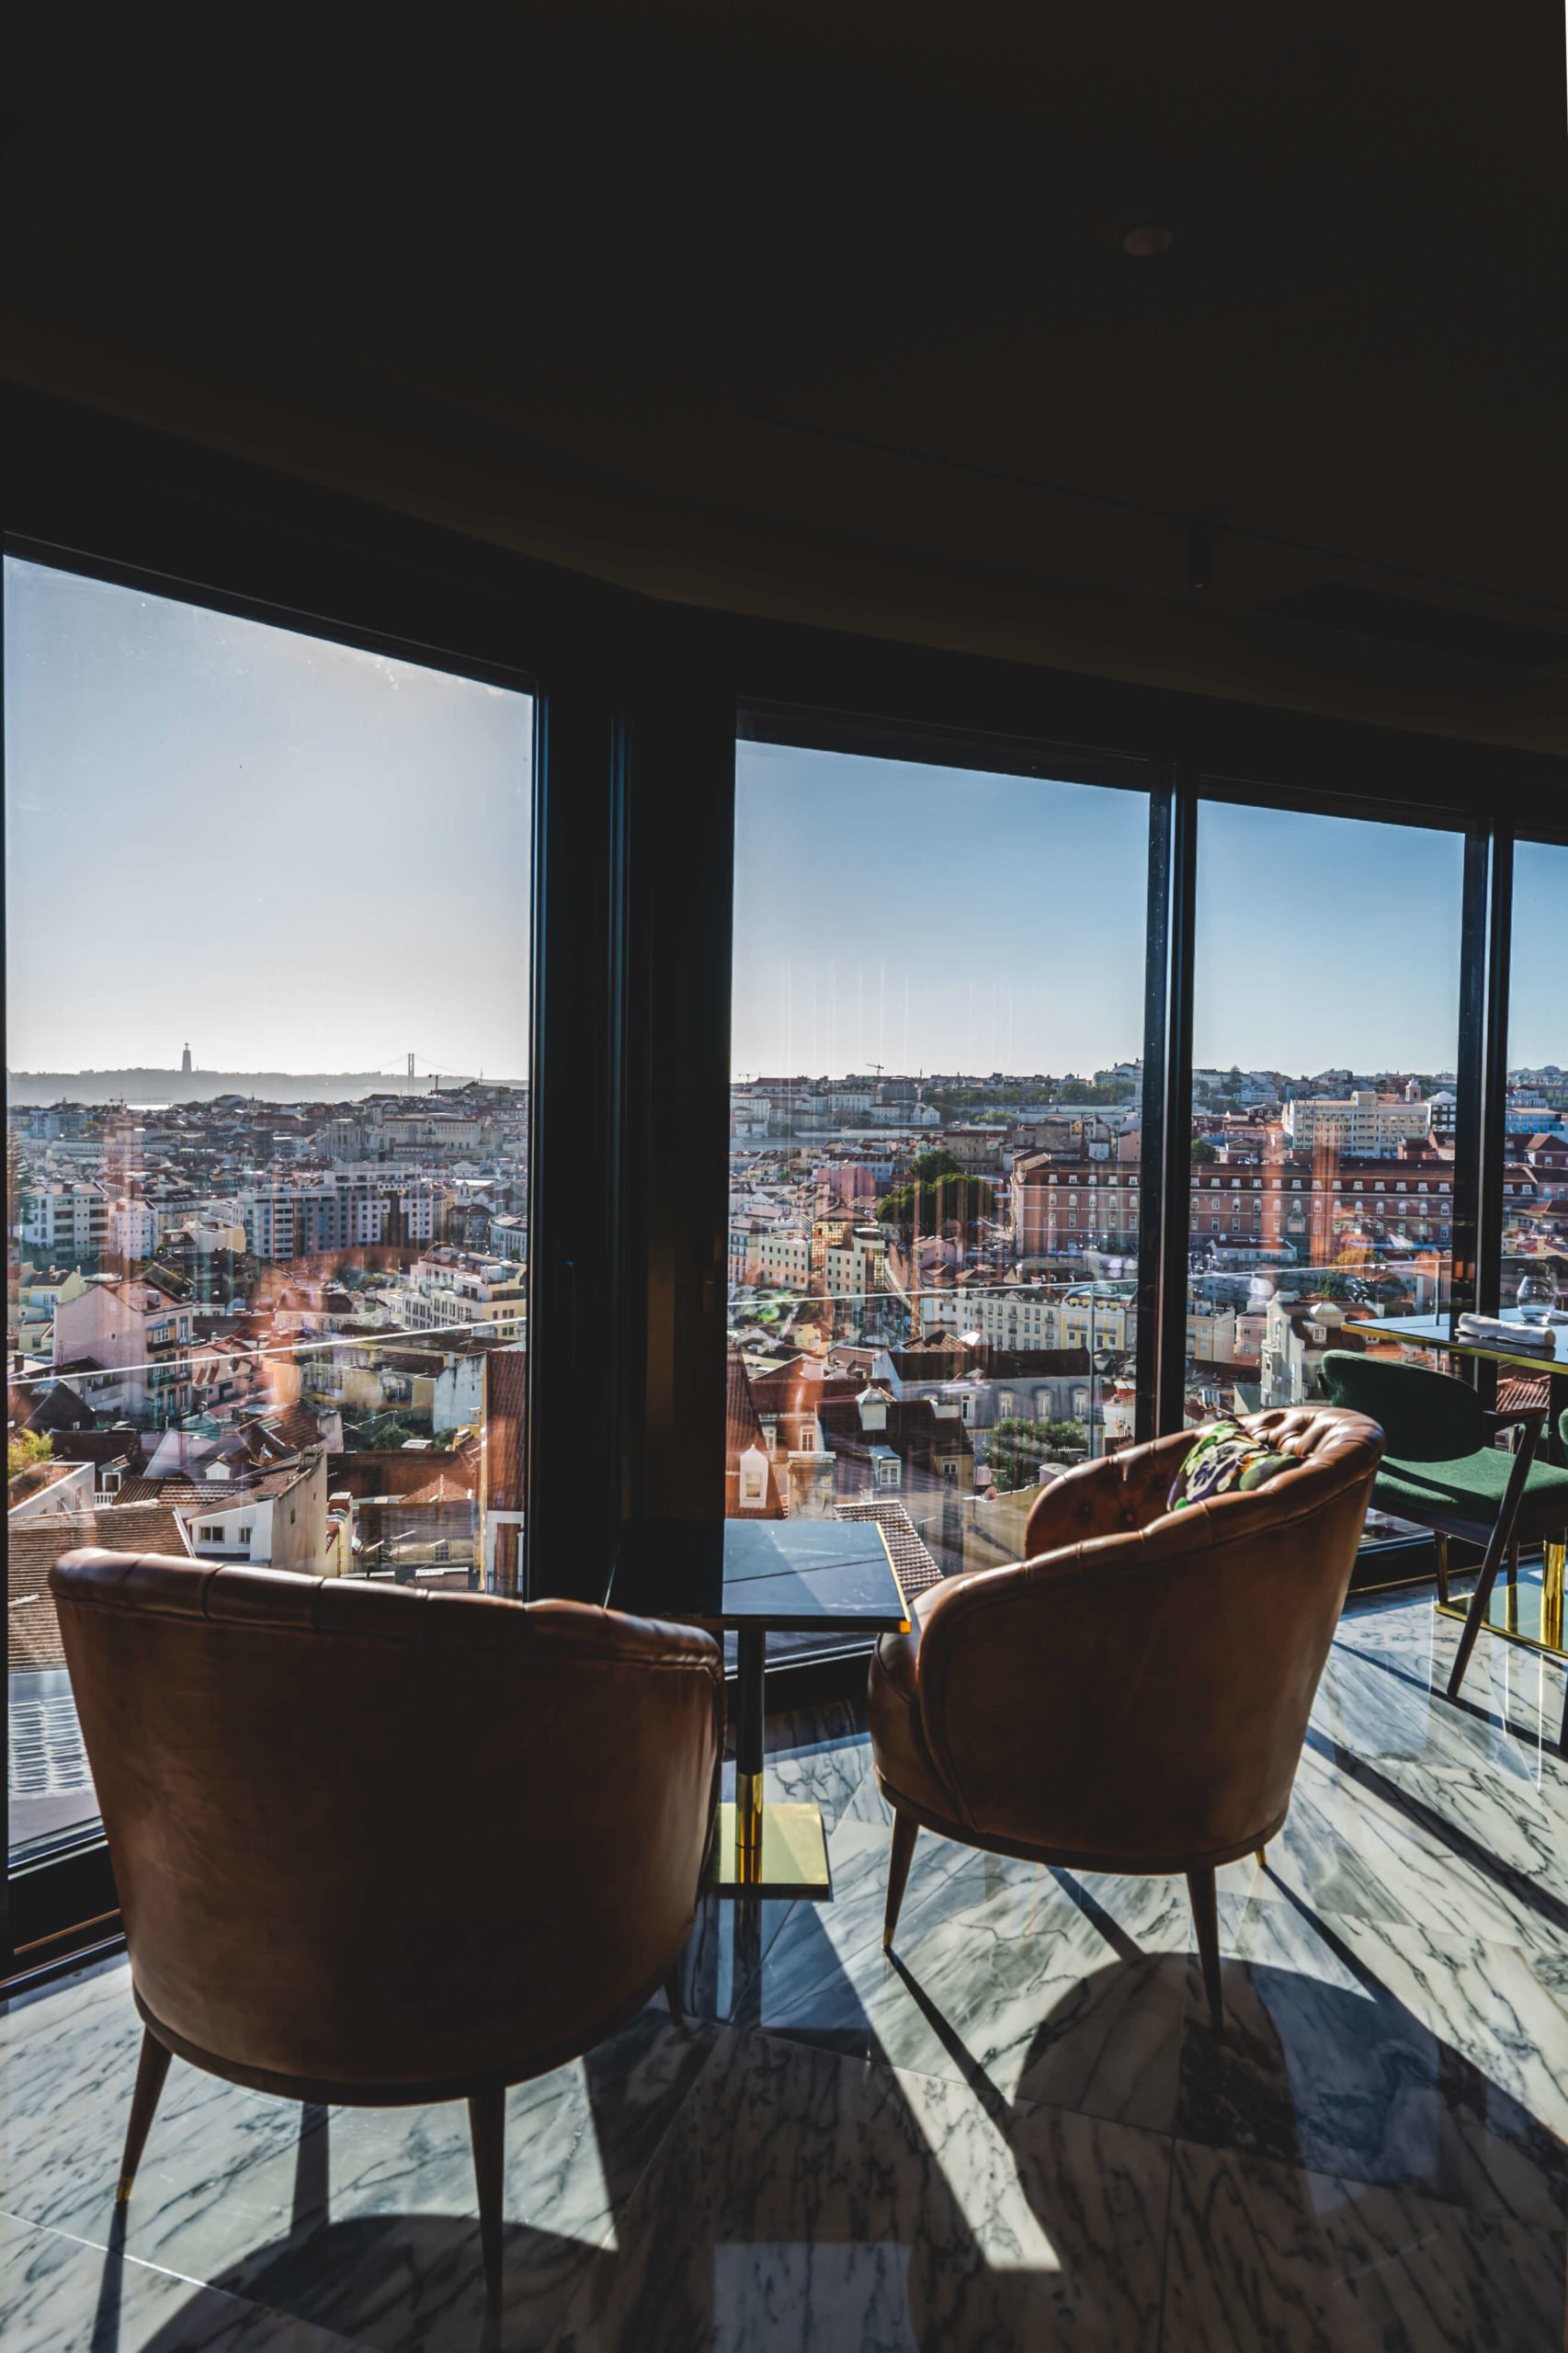 Sala com dois cadeirões, de frente a janela com vista para a cidade de Lisboa